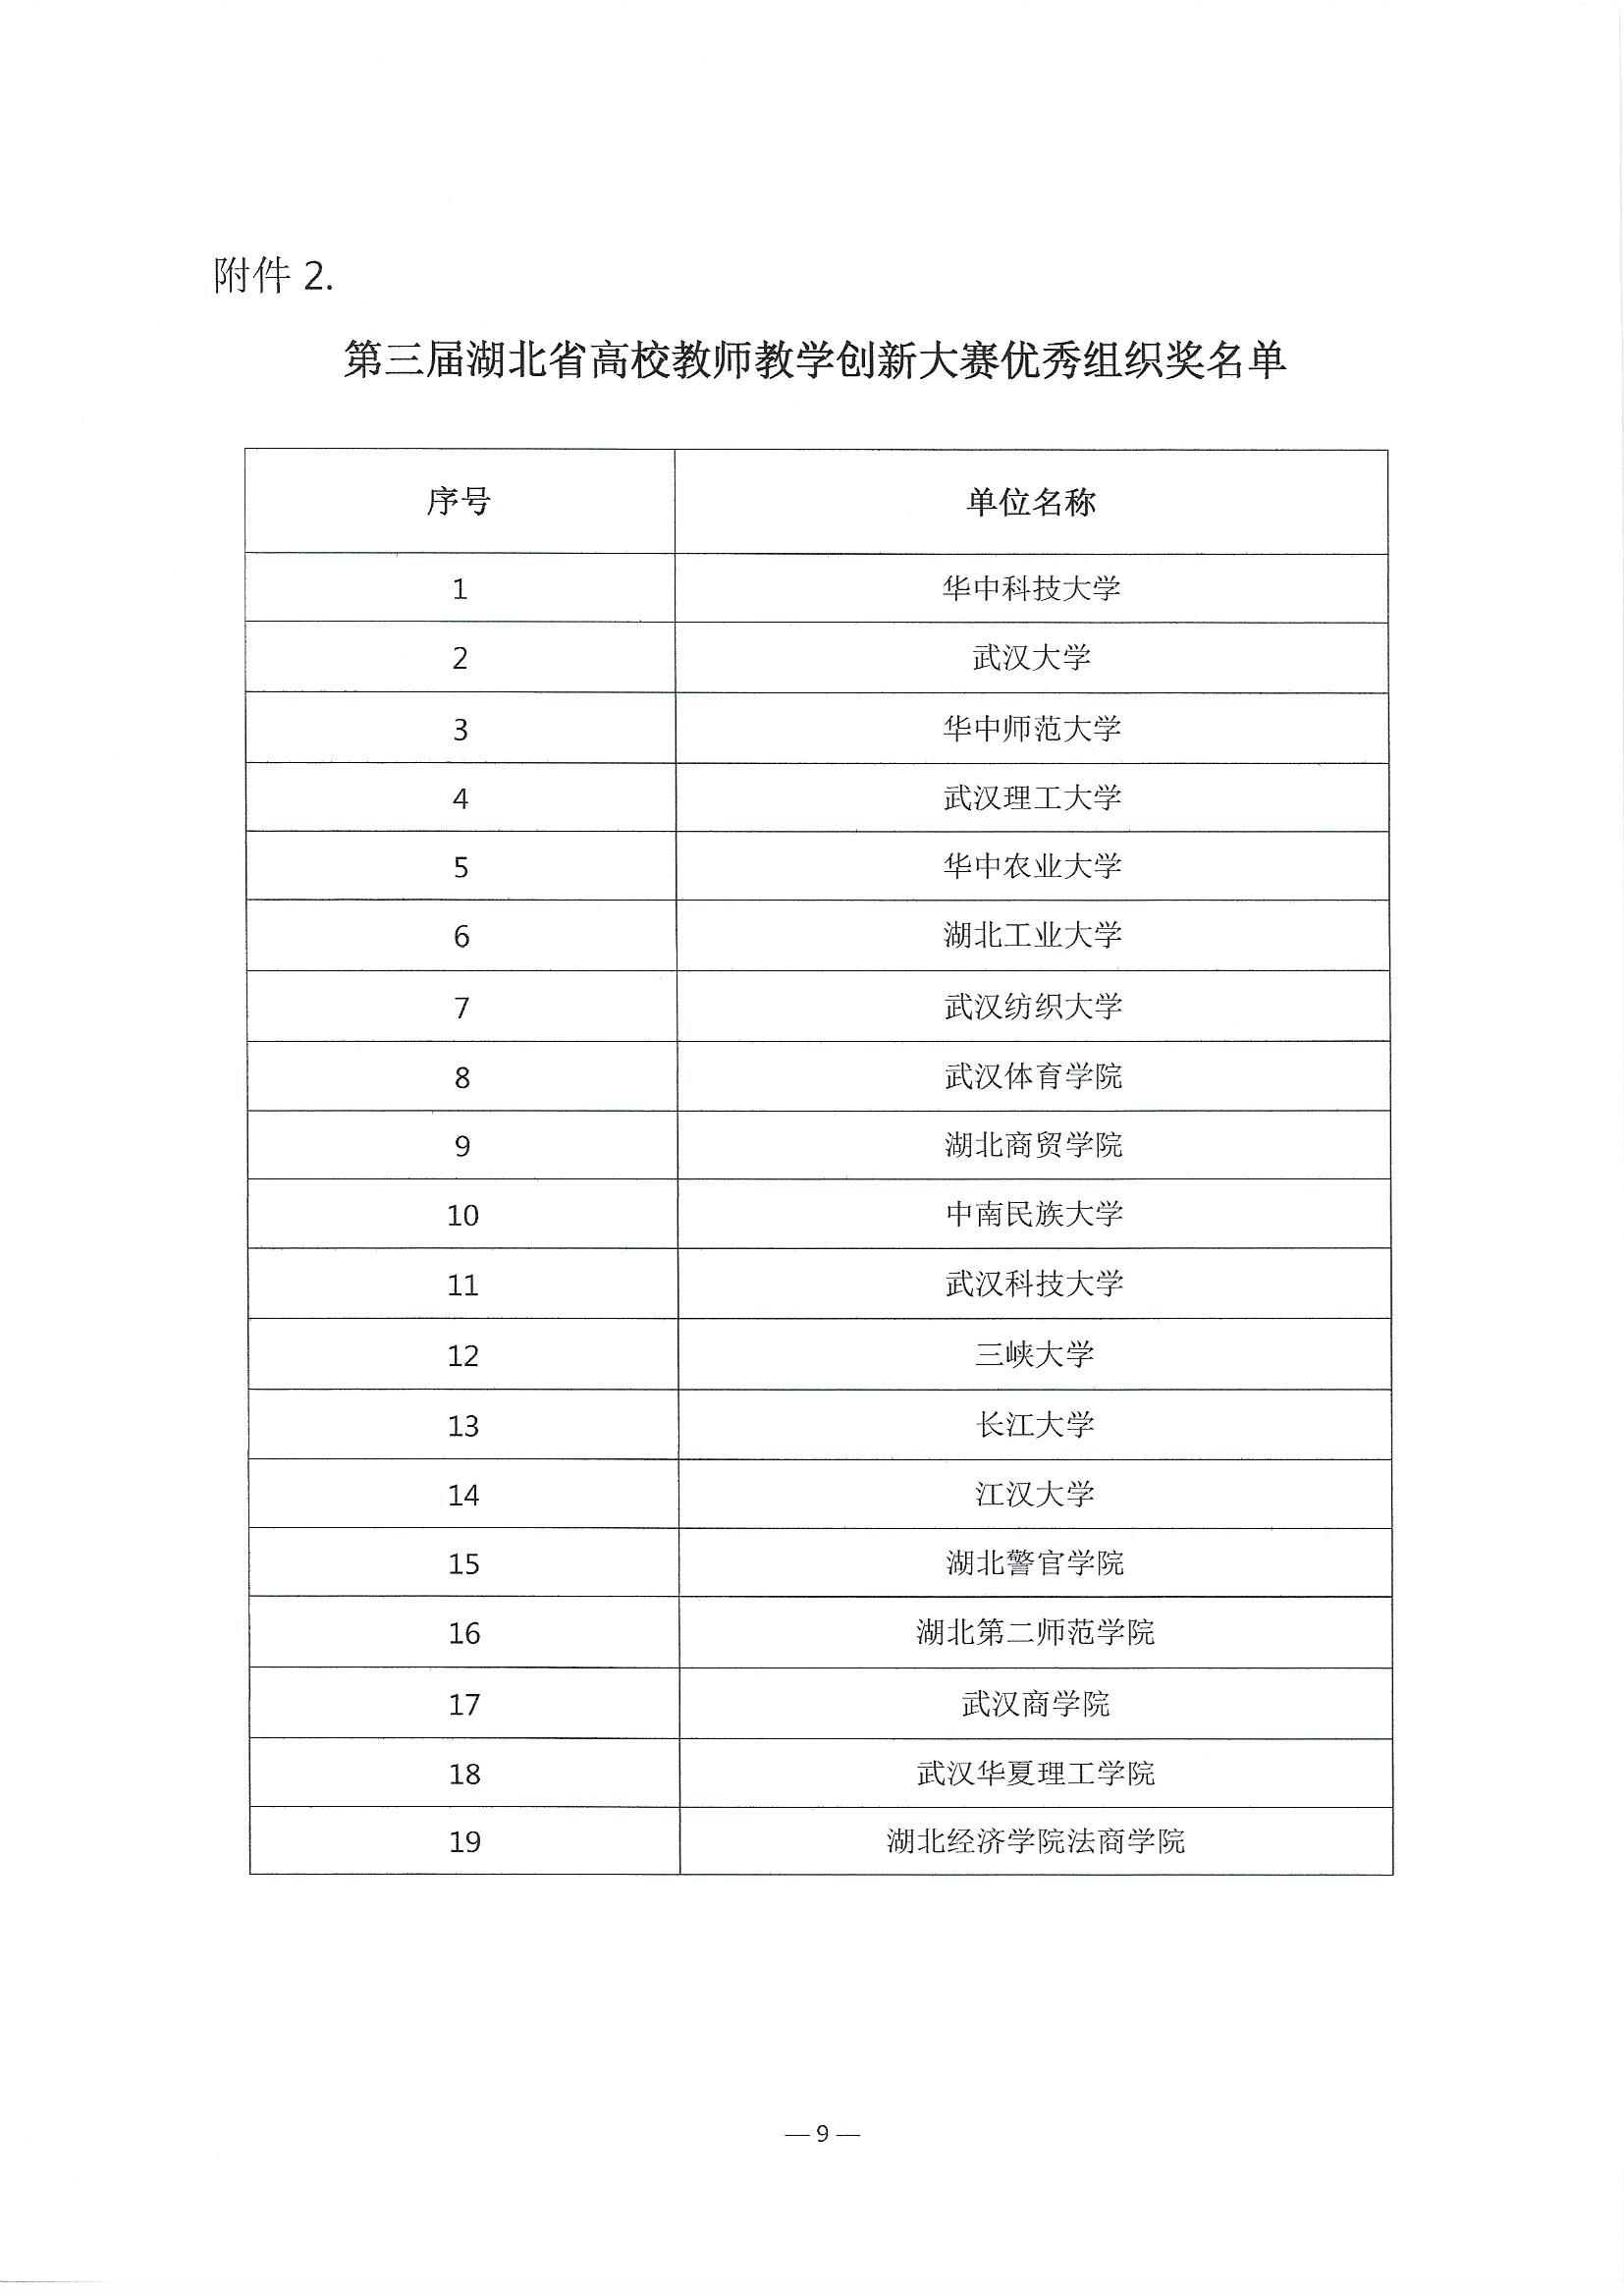 (盖章发布版）关于公布第三届湖北省高校教师教学创新大赛评审结果的通知_页面_9.jpg